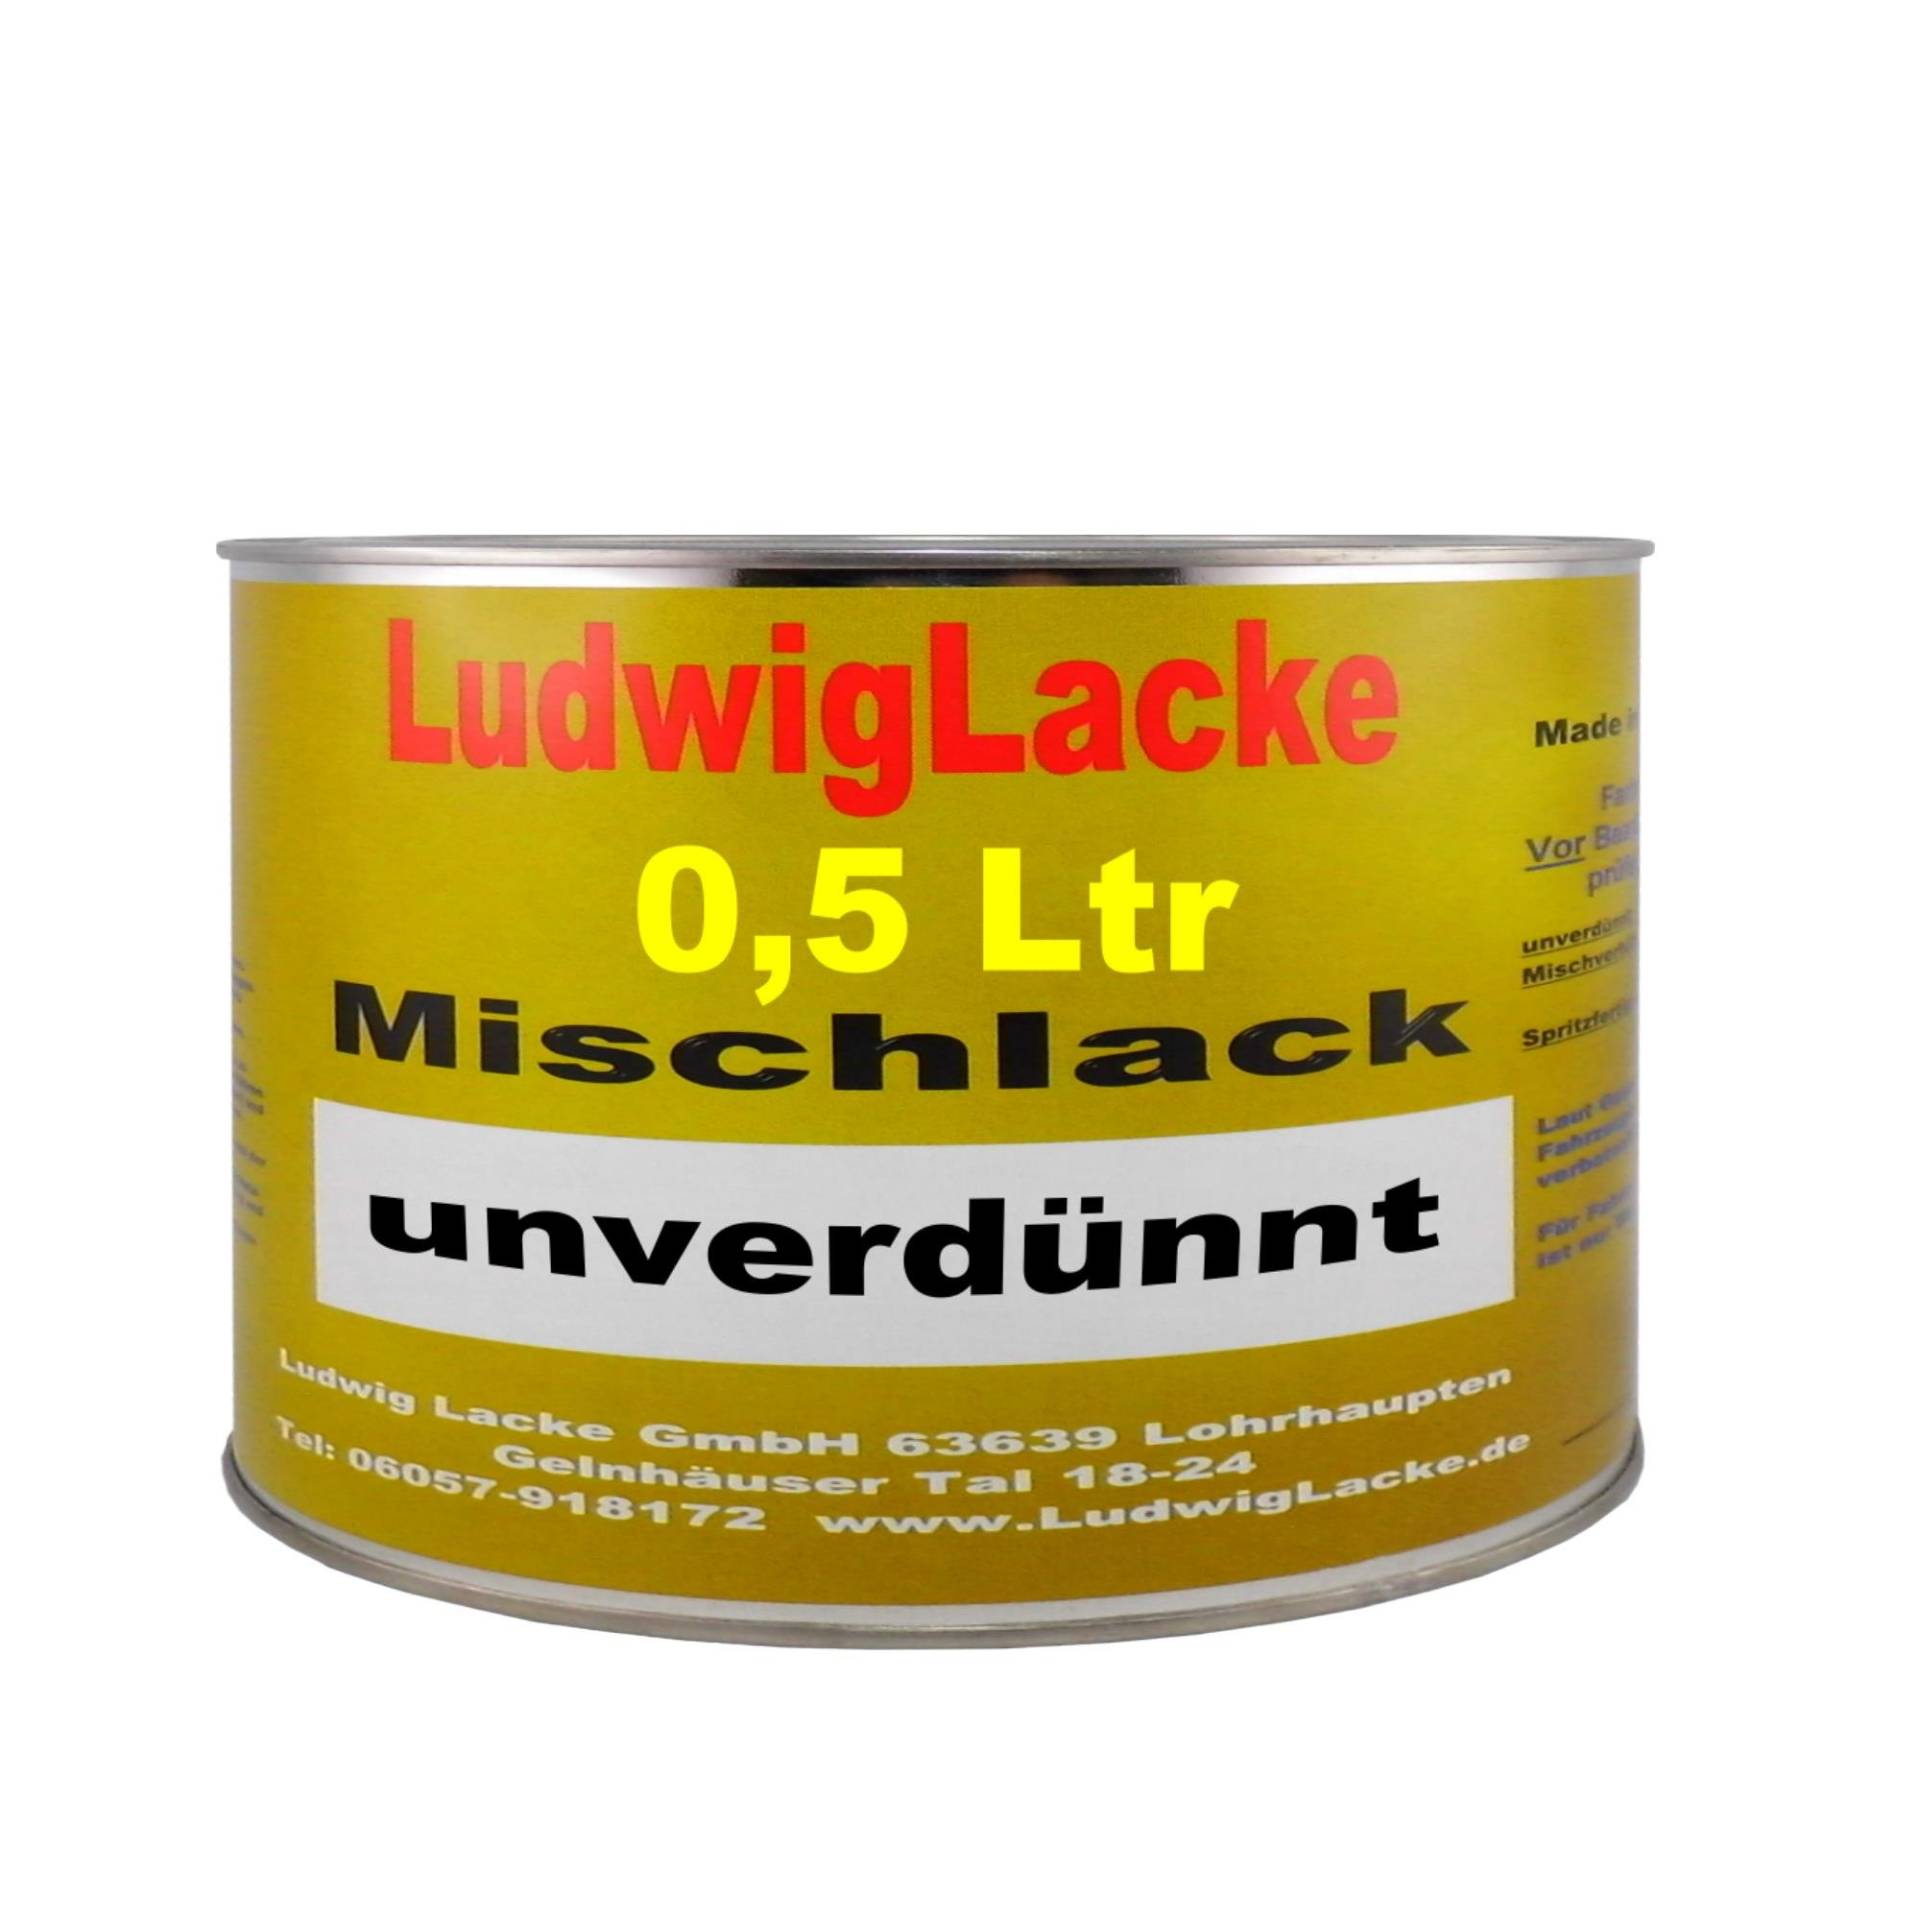 Ludwig Lacke 500 ml unverdünnter Autolack für Mercedes Benz Cubanitsilber, Metallic, 723 Bj.01-12 von Ludwig Lacke